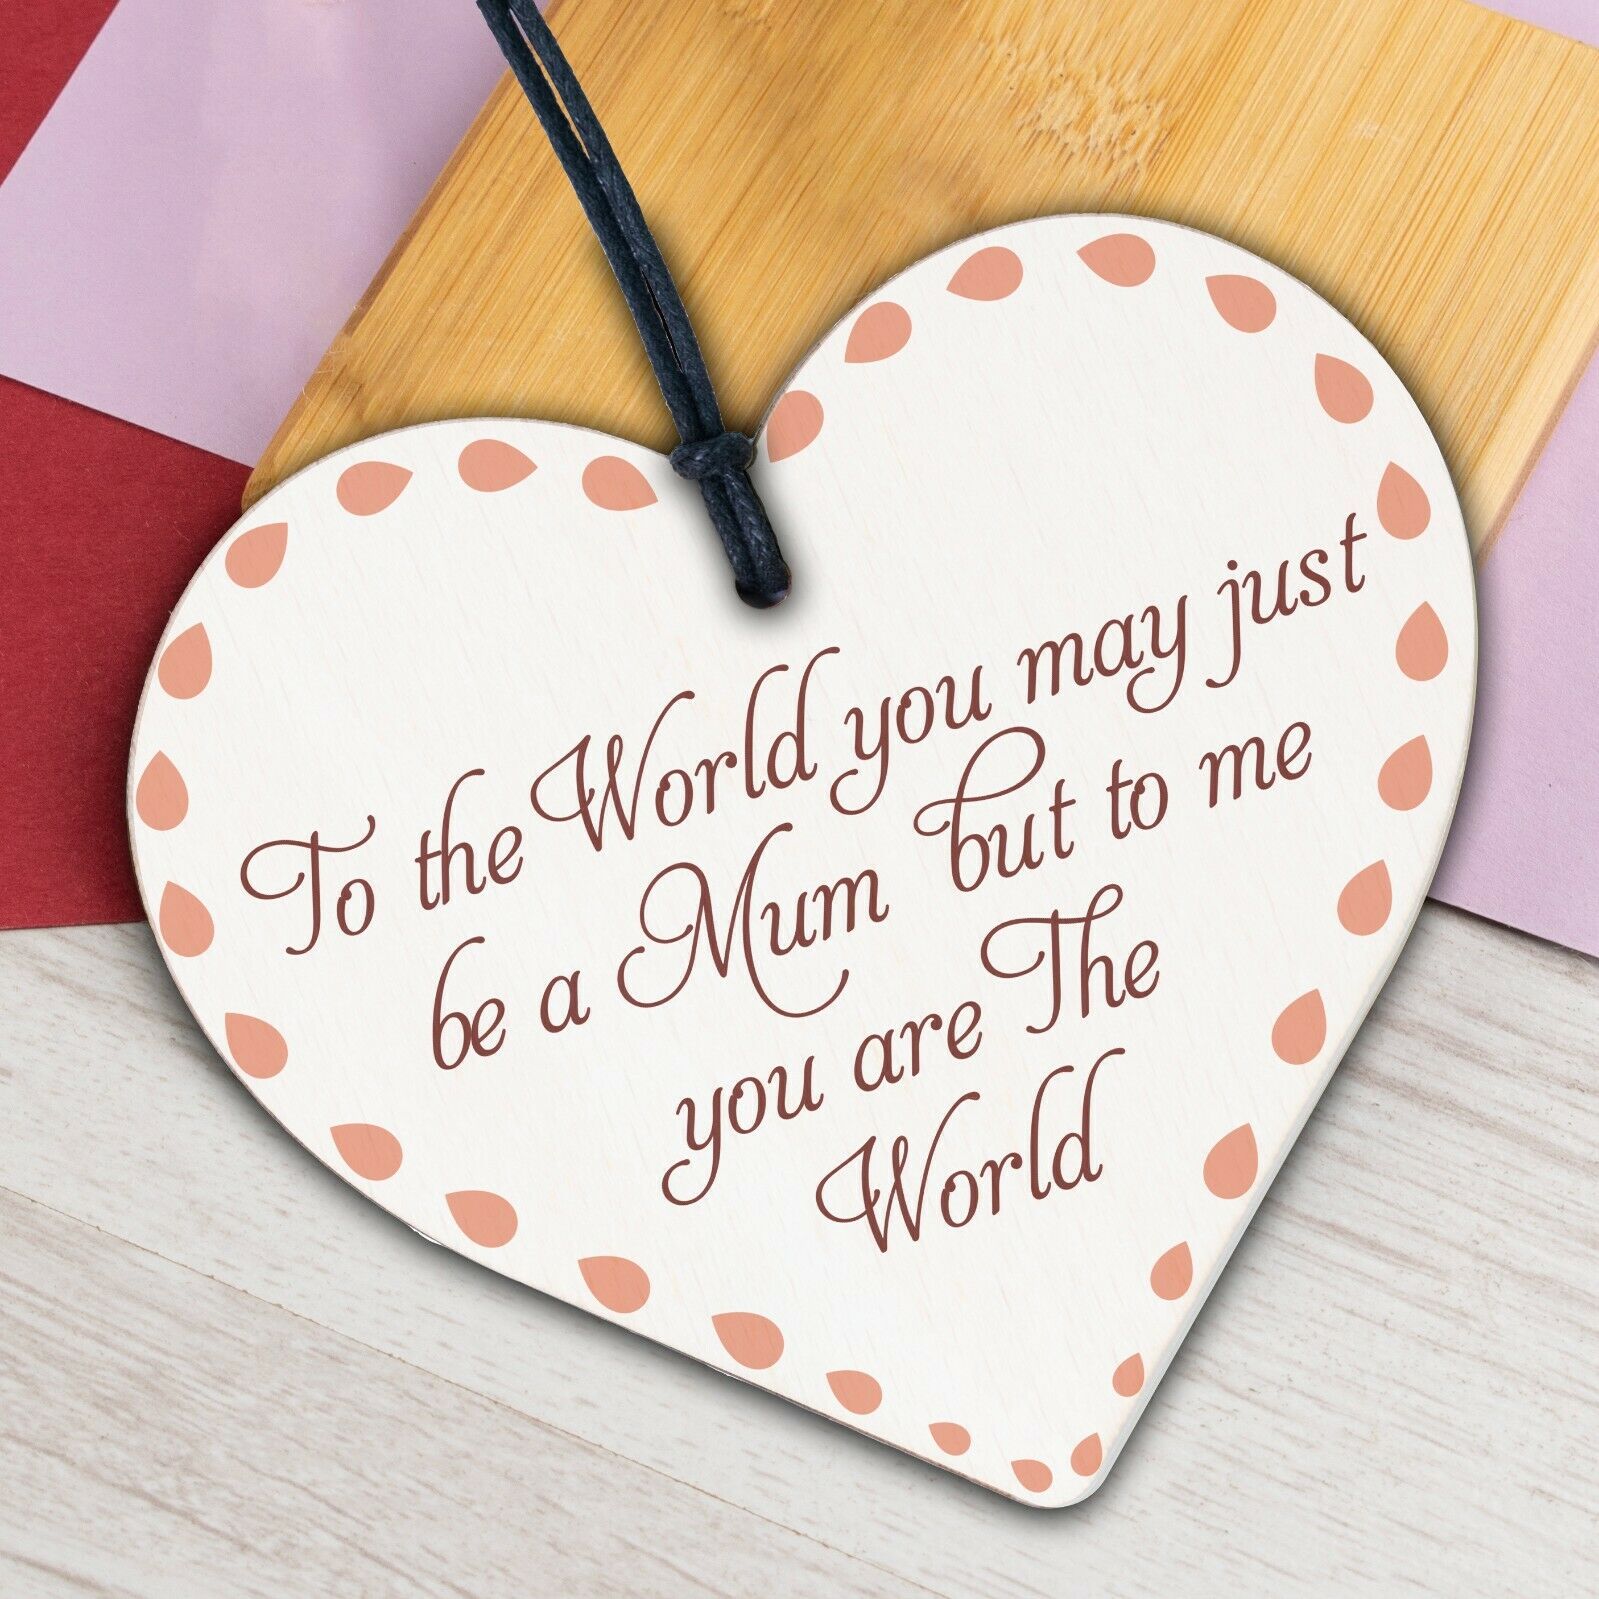 Mum Mummy Gift Handmade Wooden Heart Sign Gift For Mum Birthday Christmas